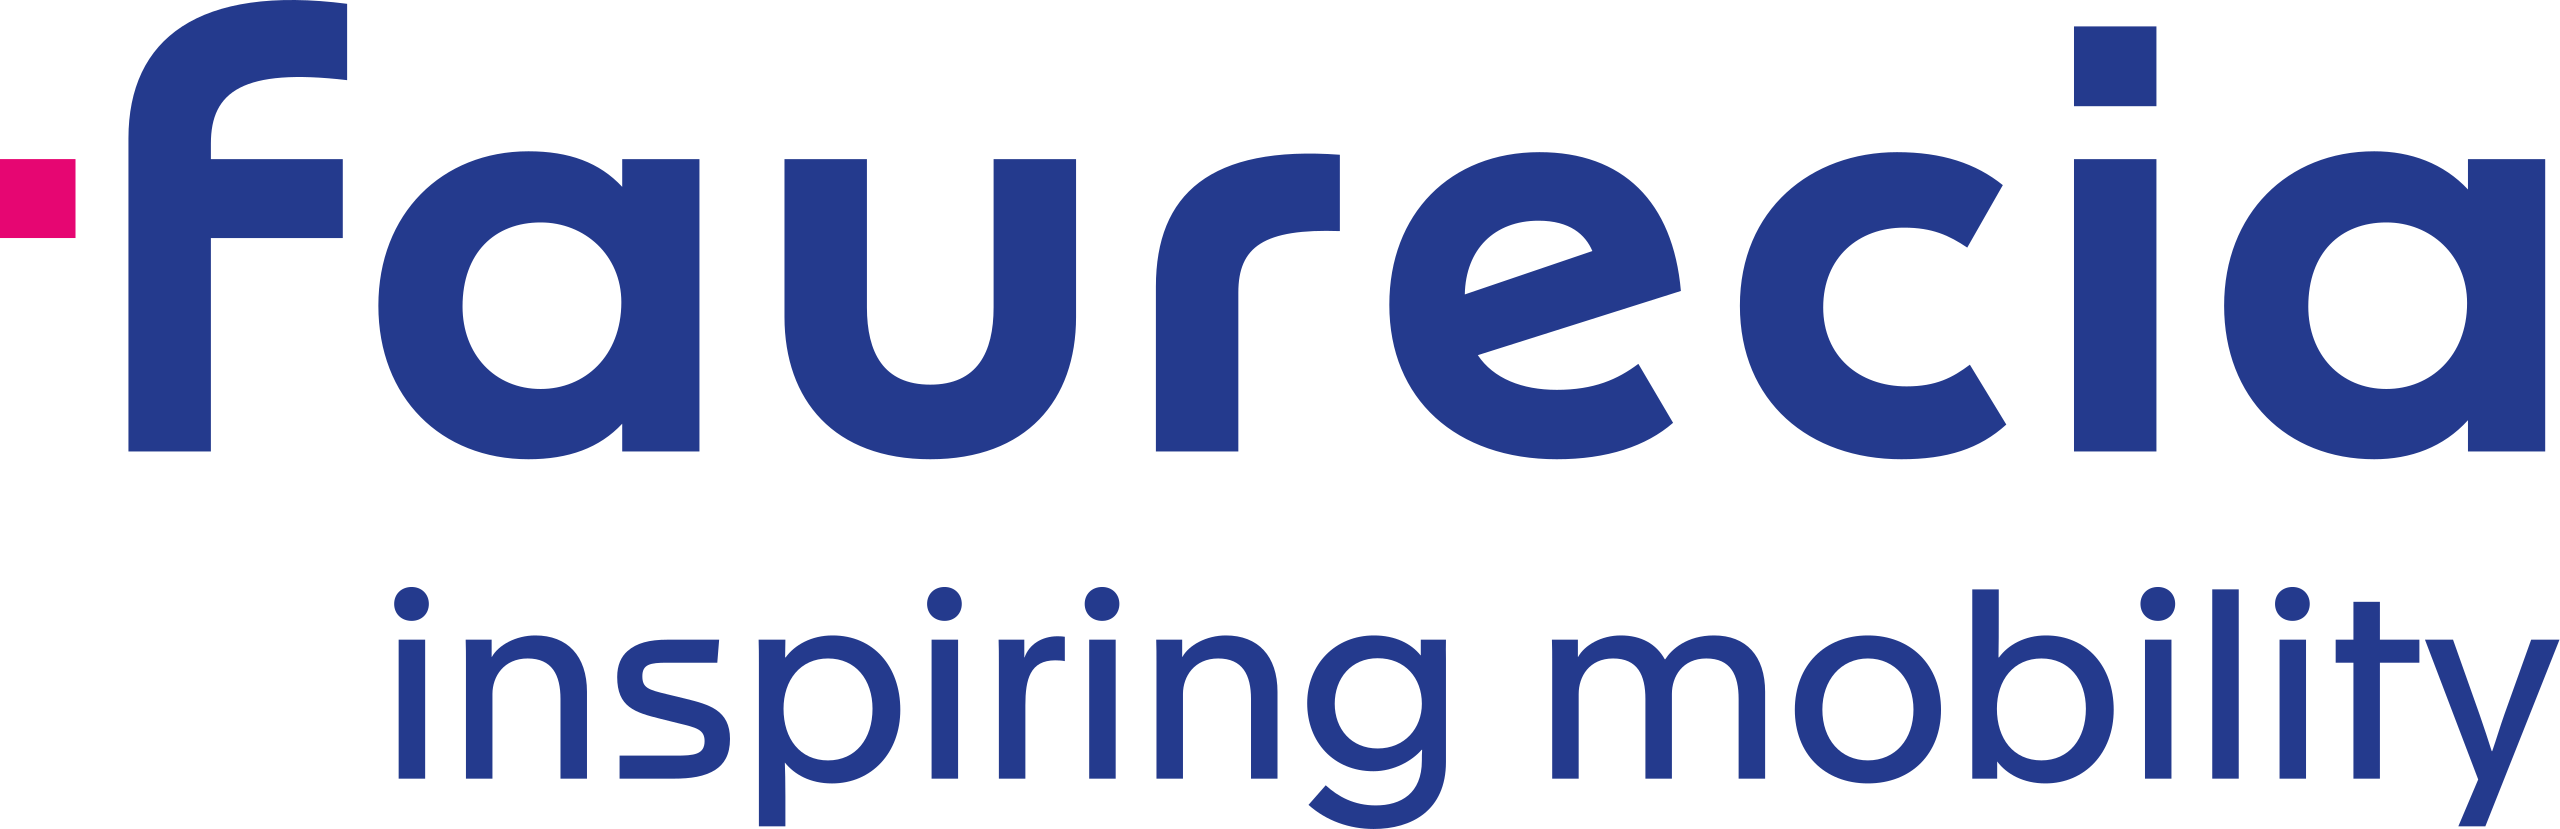 Logo firmy Faurecia